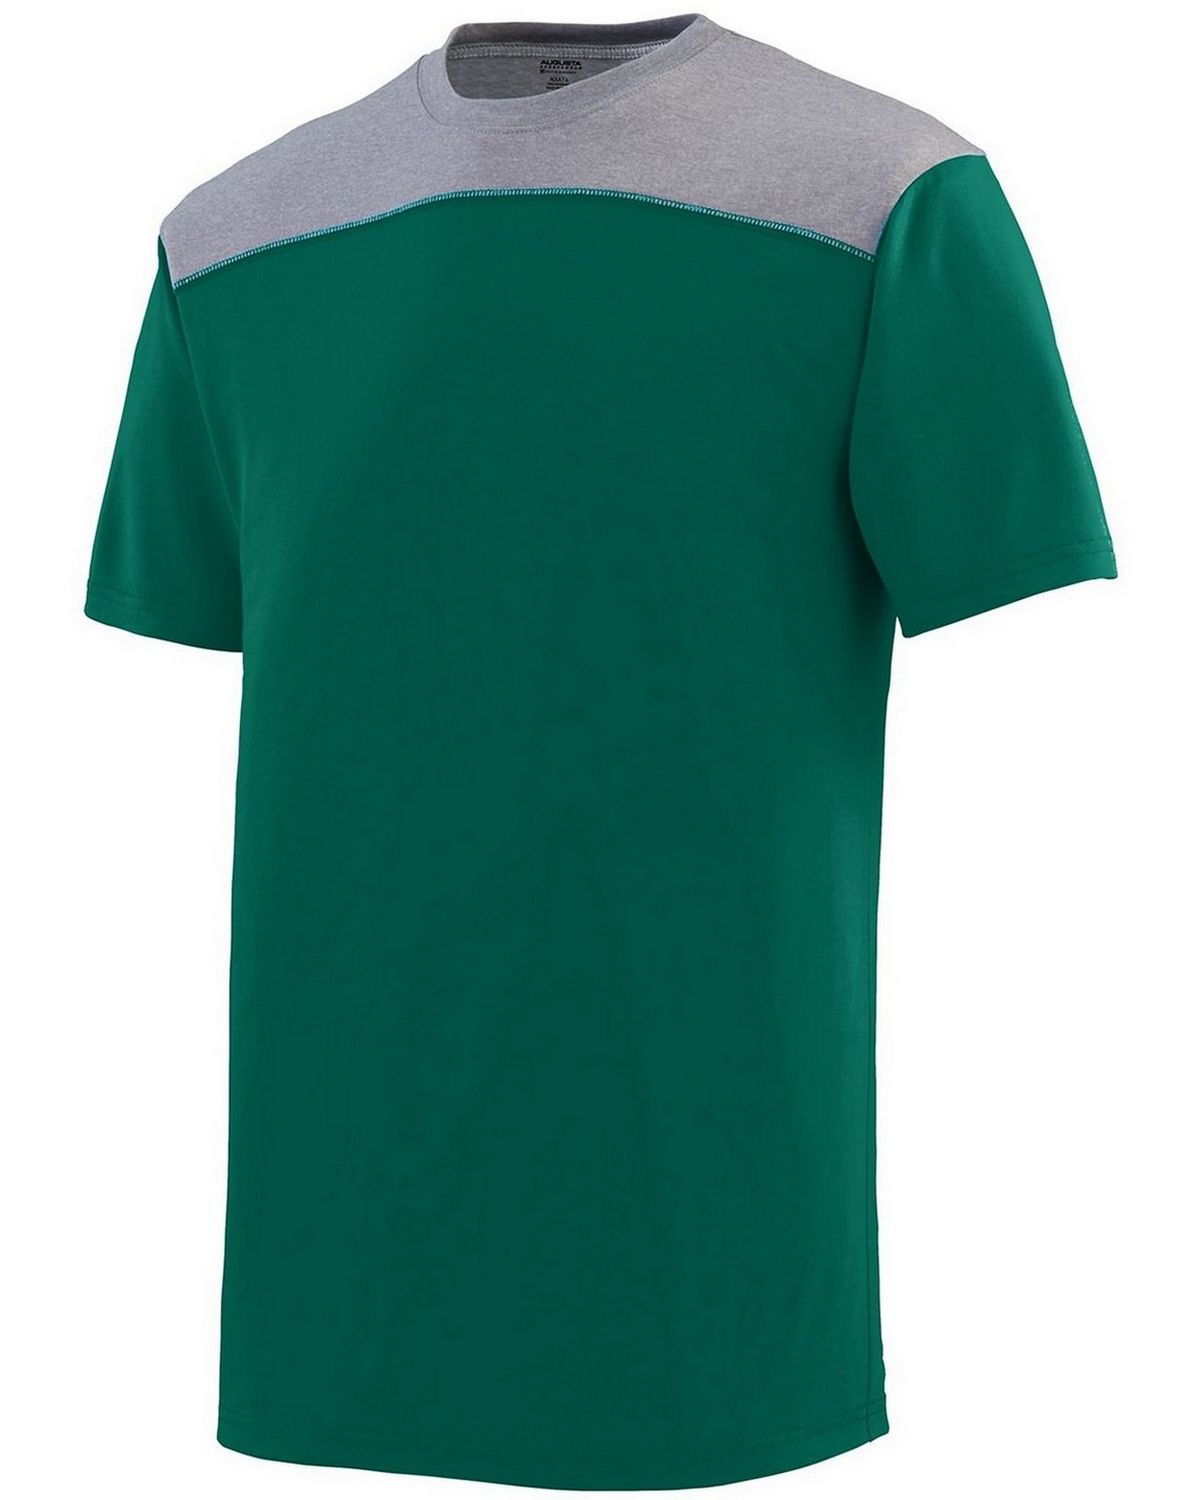 Augusta Sportswear 3055 Men's Challenge T-Shirt